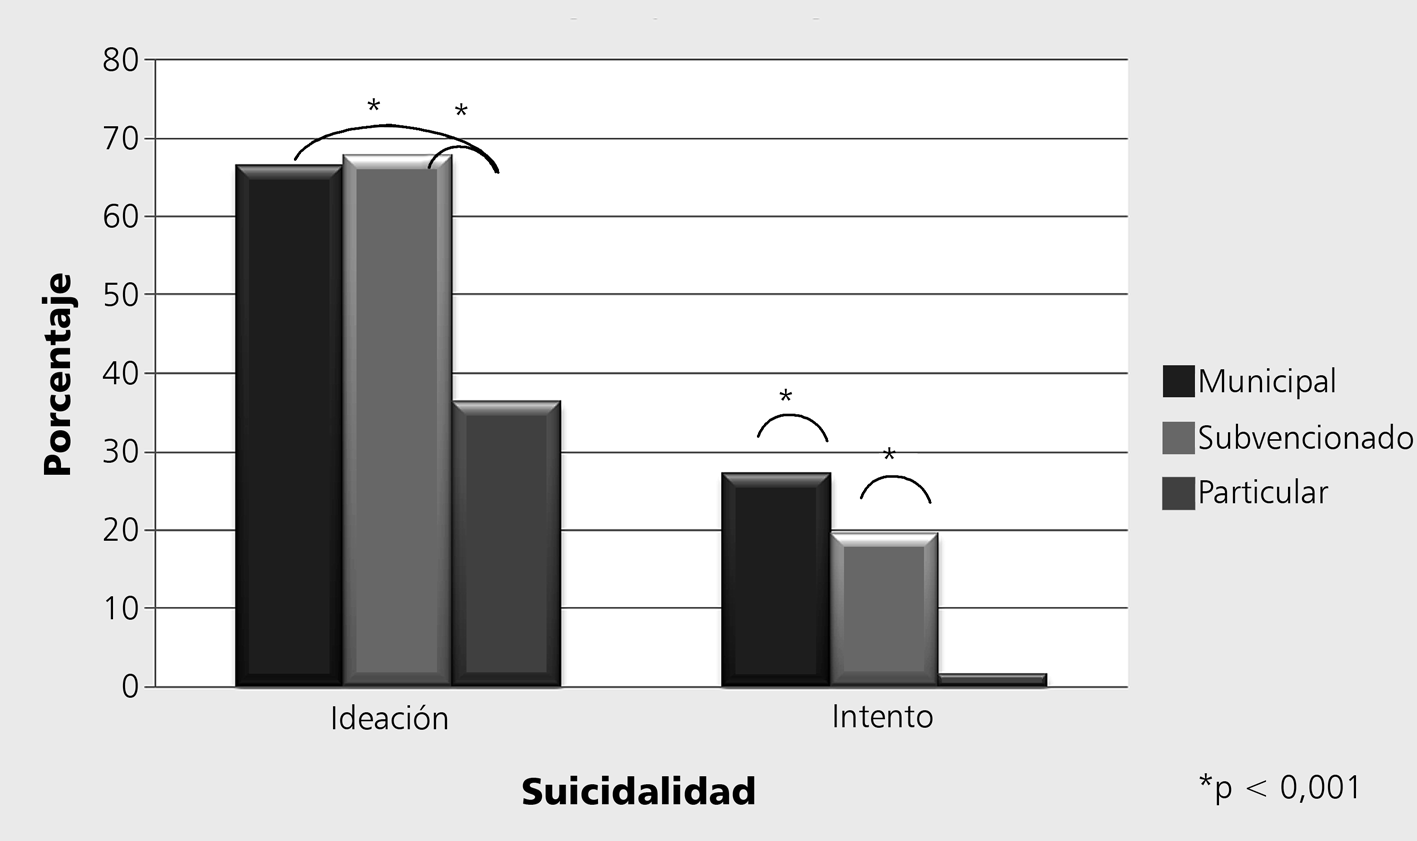 Figura 5. Prevalencia de vida de ideación e intento suicida en adolescentes de la RM según tipo de colegio, 2007.